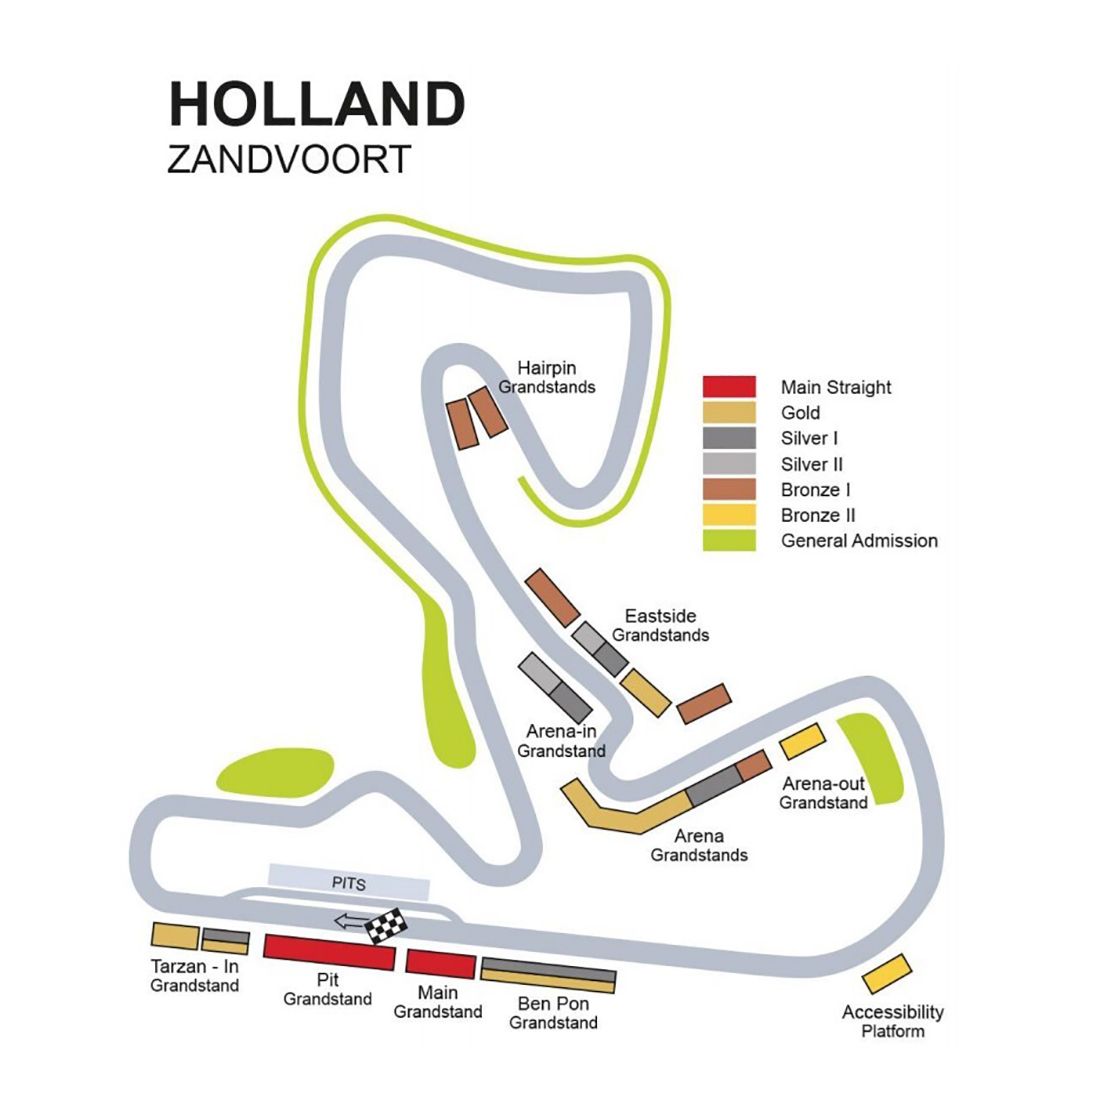 Kaarten Gp Zandvoort 2021 Formule 1 Nederland 2021 Entree Tickets En Tribuneplaatsen Ticket Travel